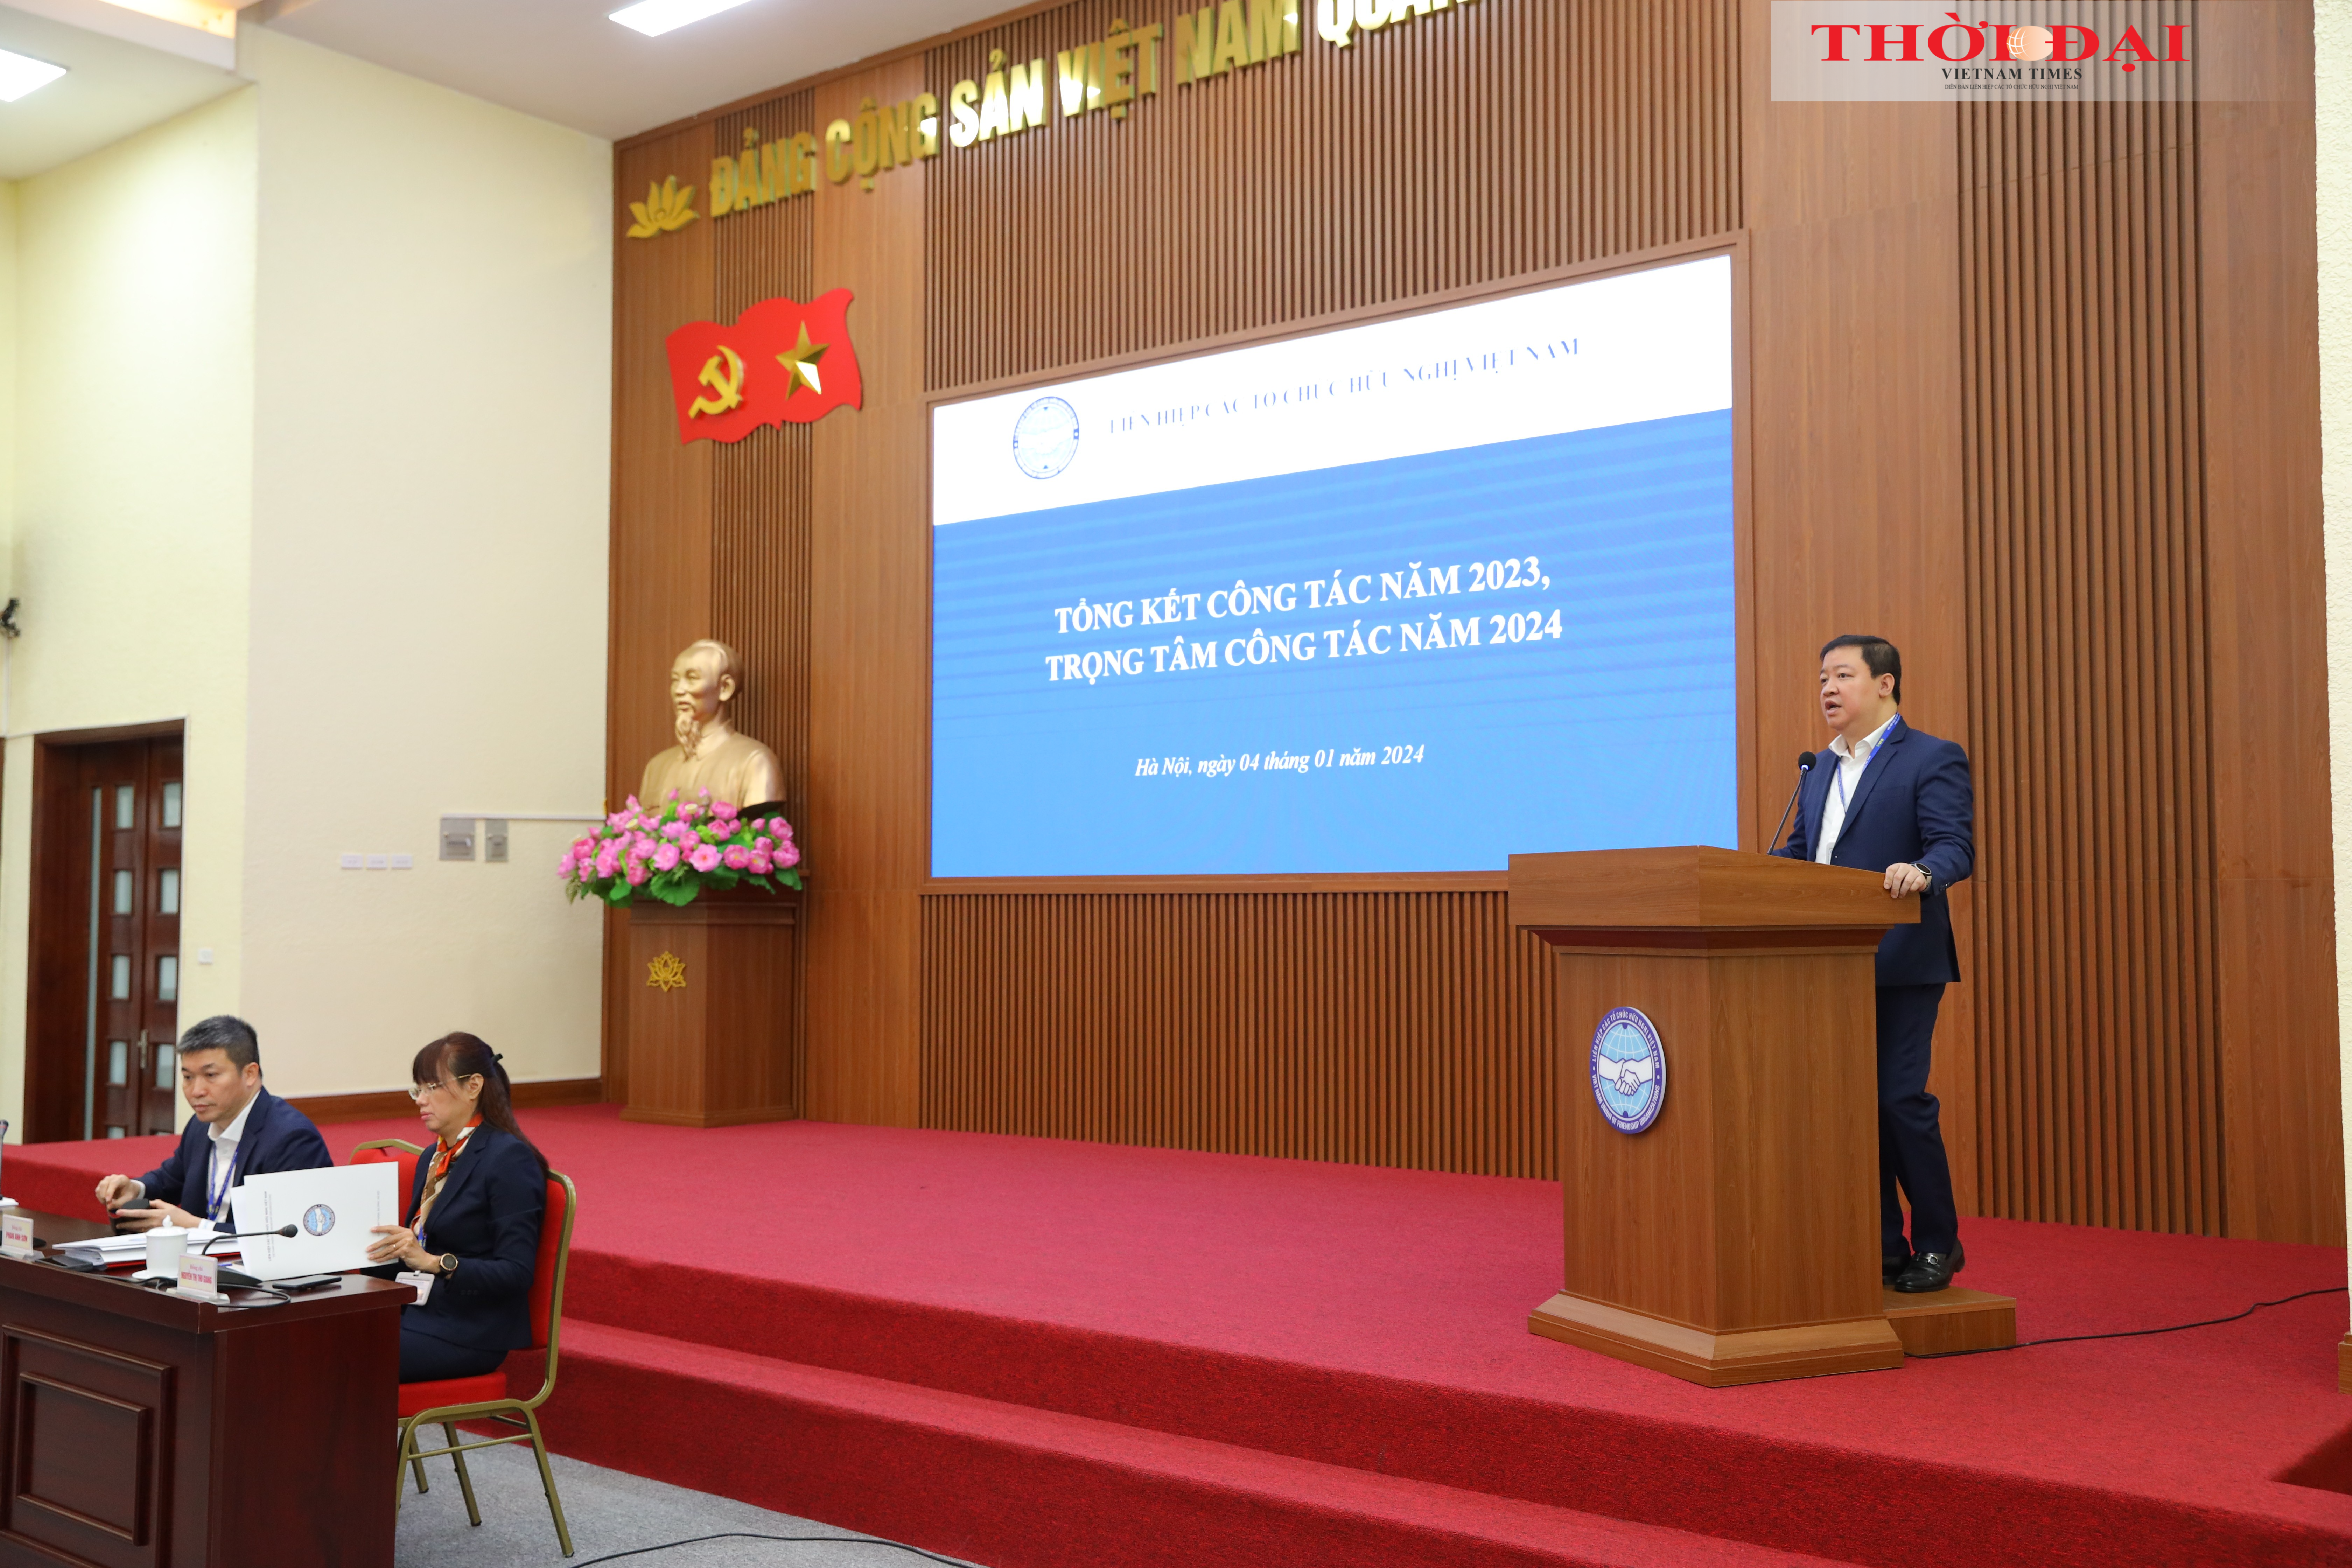 Phó Chủ tịch VUFO Nguyễn Ngọc Hùng trình bày báo cáo tổng kết công tác năm 2023, trọng tâm công tác năm 2024 của VUFO. (Ảnh: Đinh Hòa)